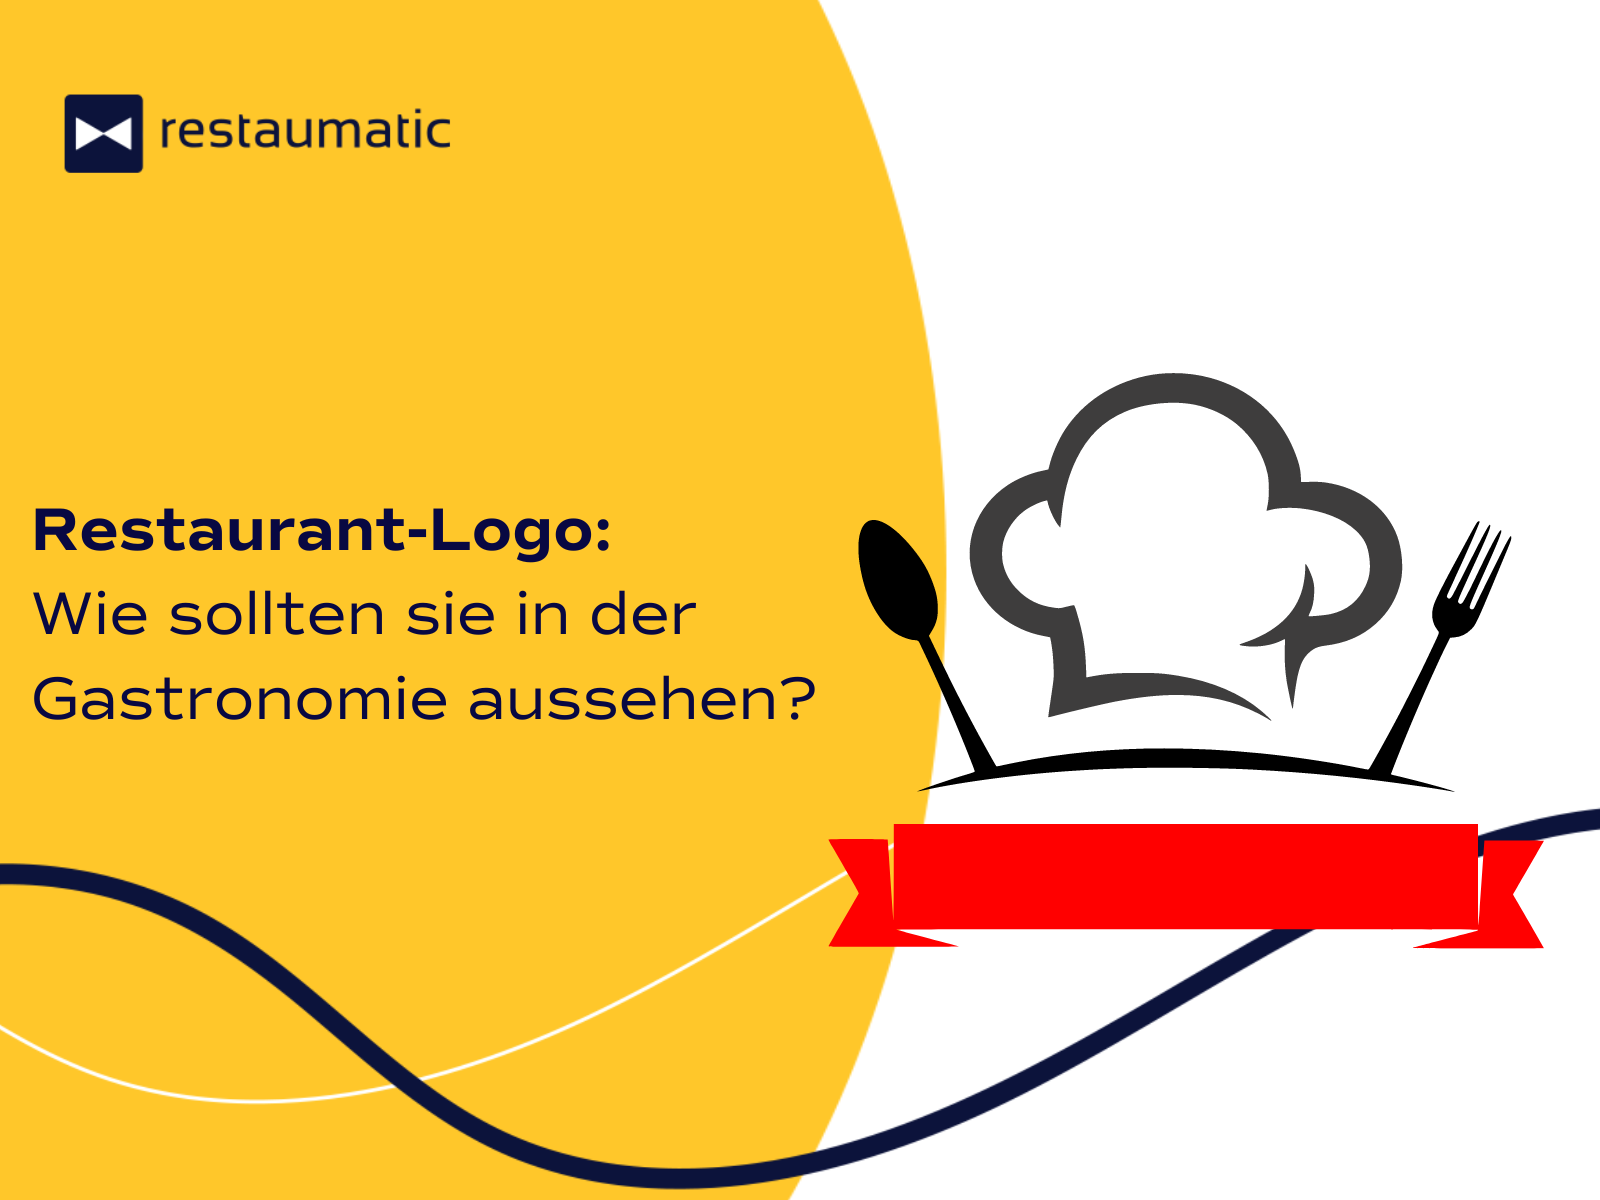 Restaurant-Logo: Wie soll es in der Gastronomie aussehen?